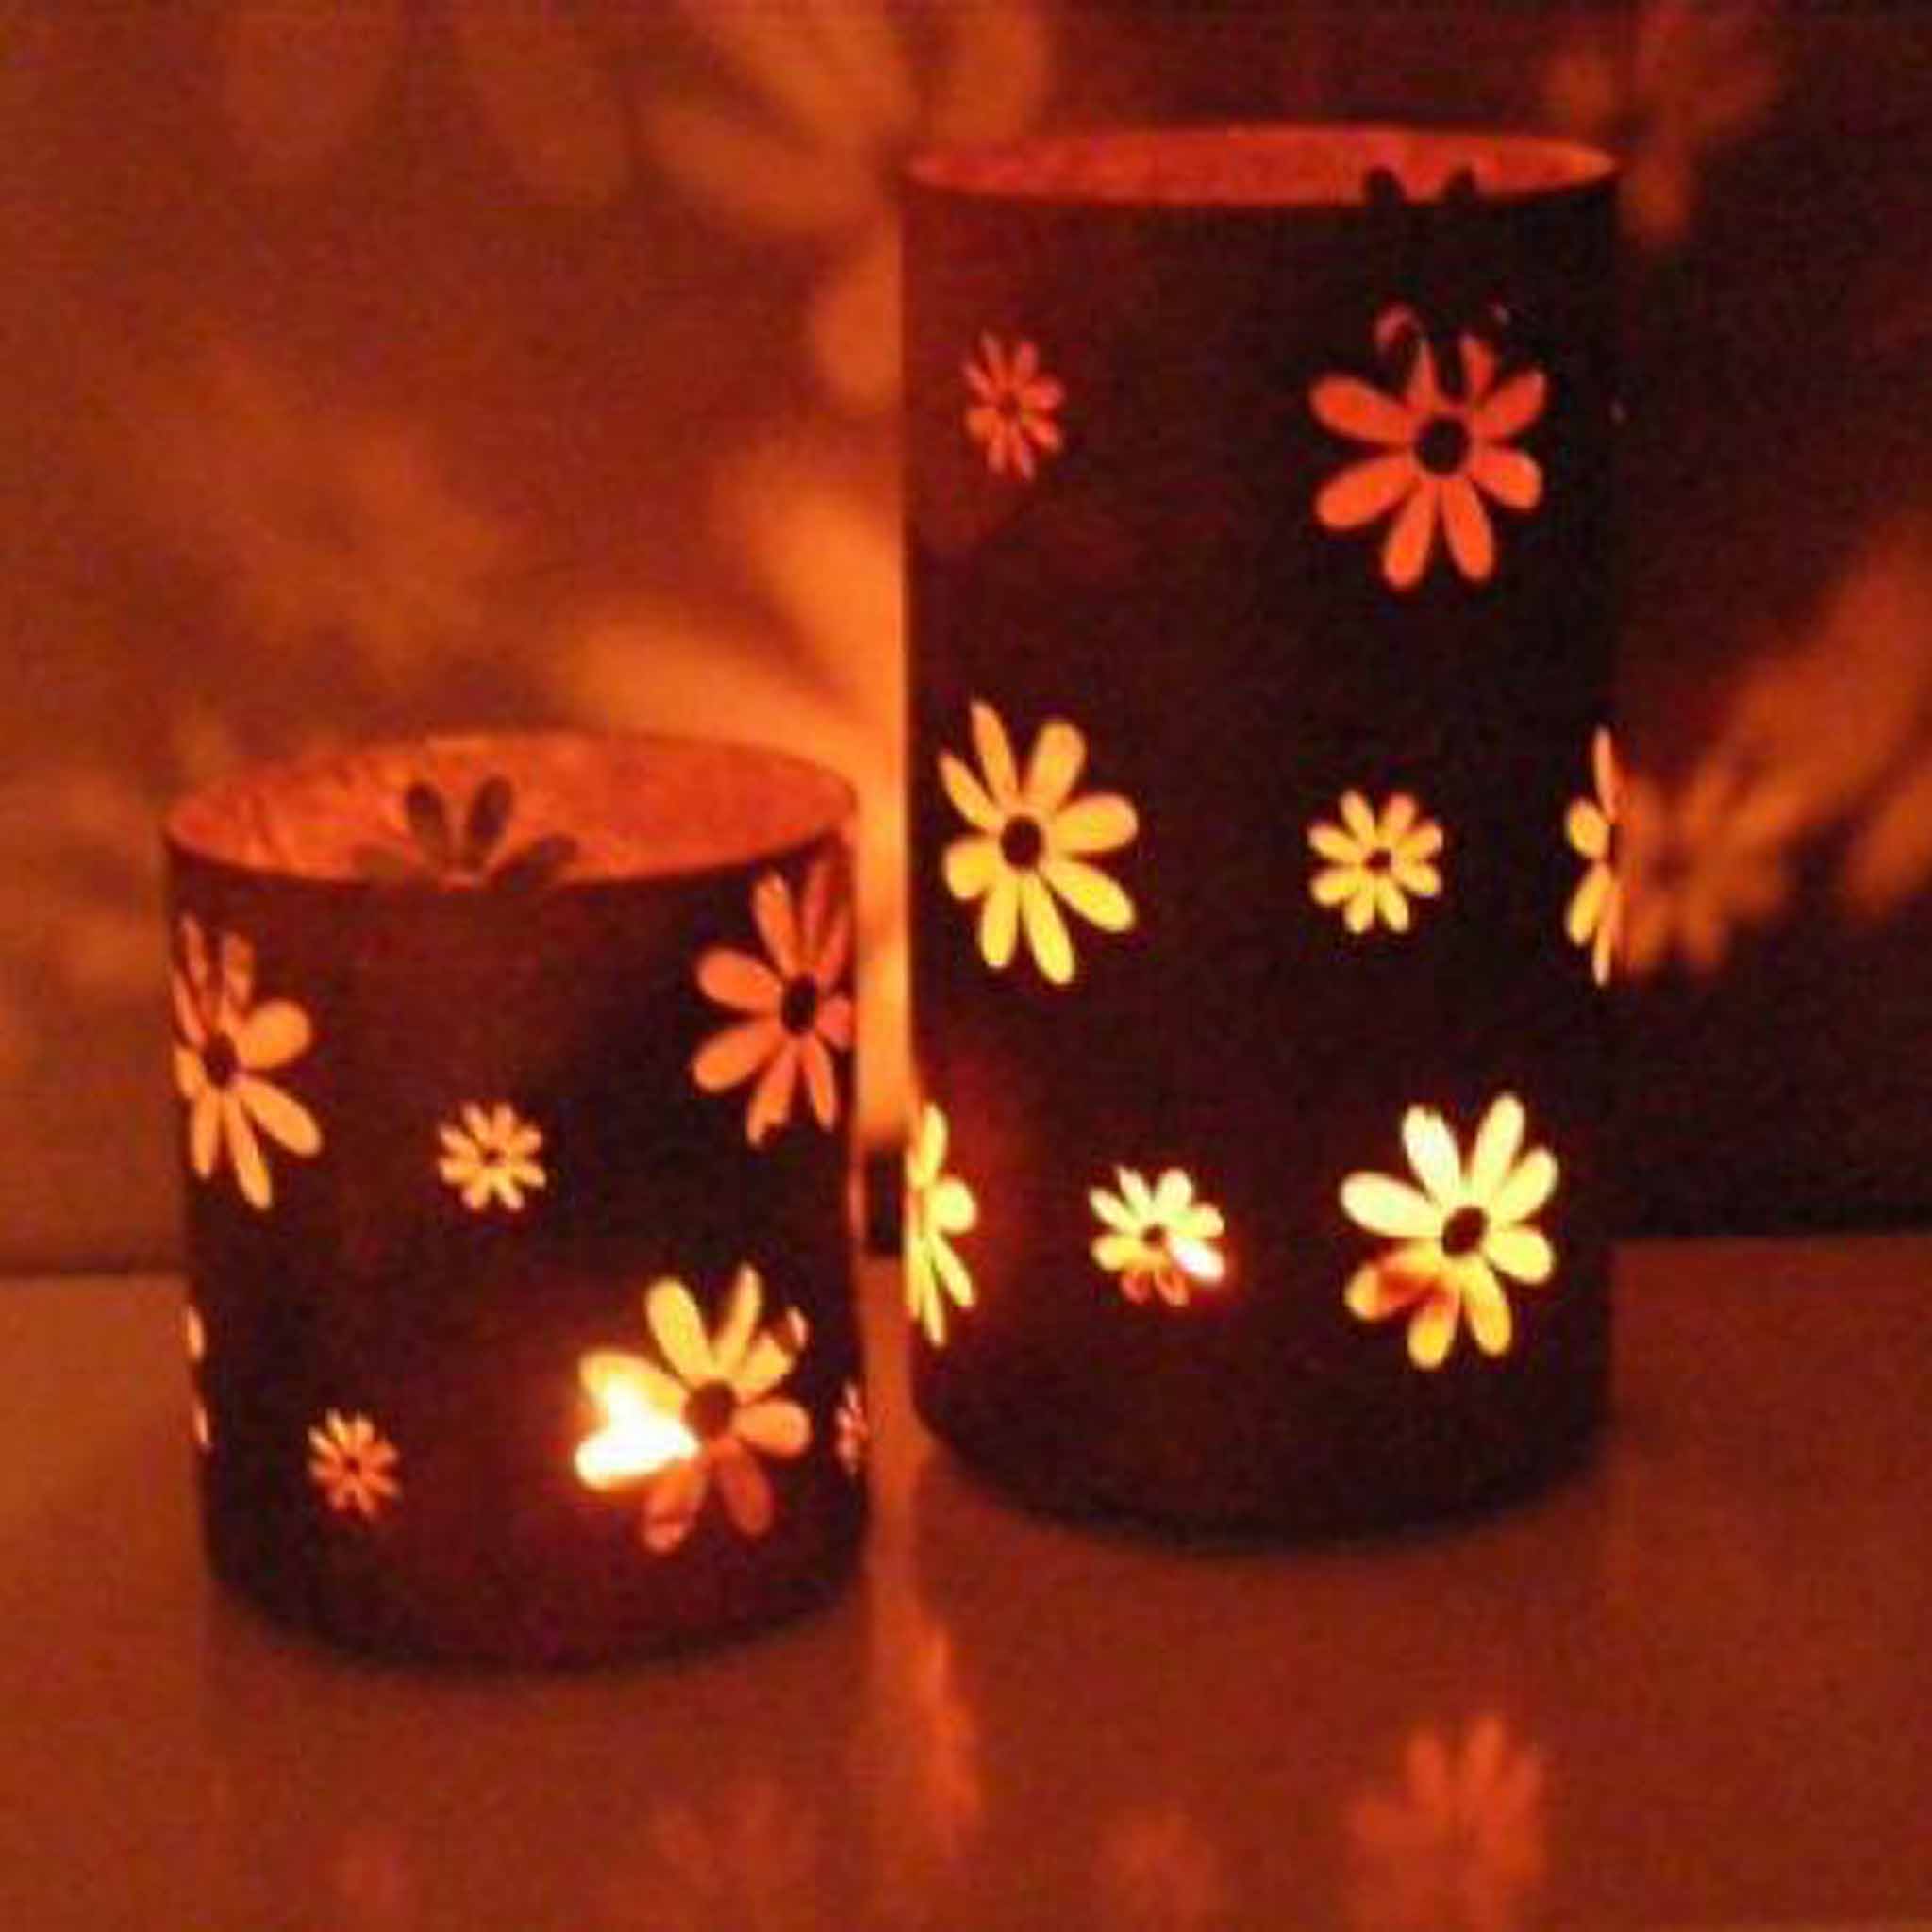 Rustikales Windlicht aus Metall mit Blumenmuster für stimmungsvolle Beleuchtung im Innen- und Außenbereich - jetzt bei Edelrostshop kaufen!